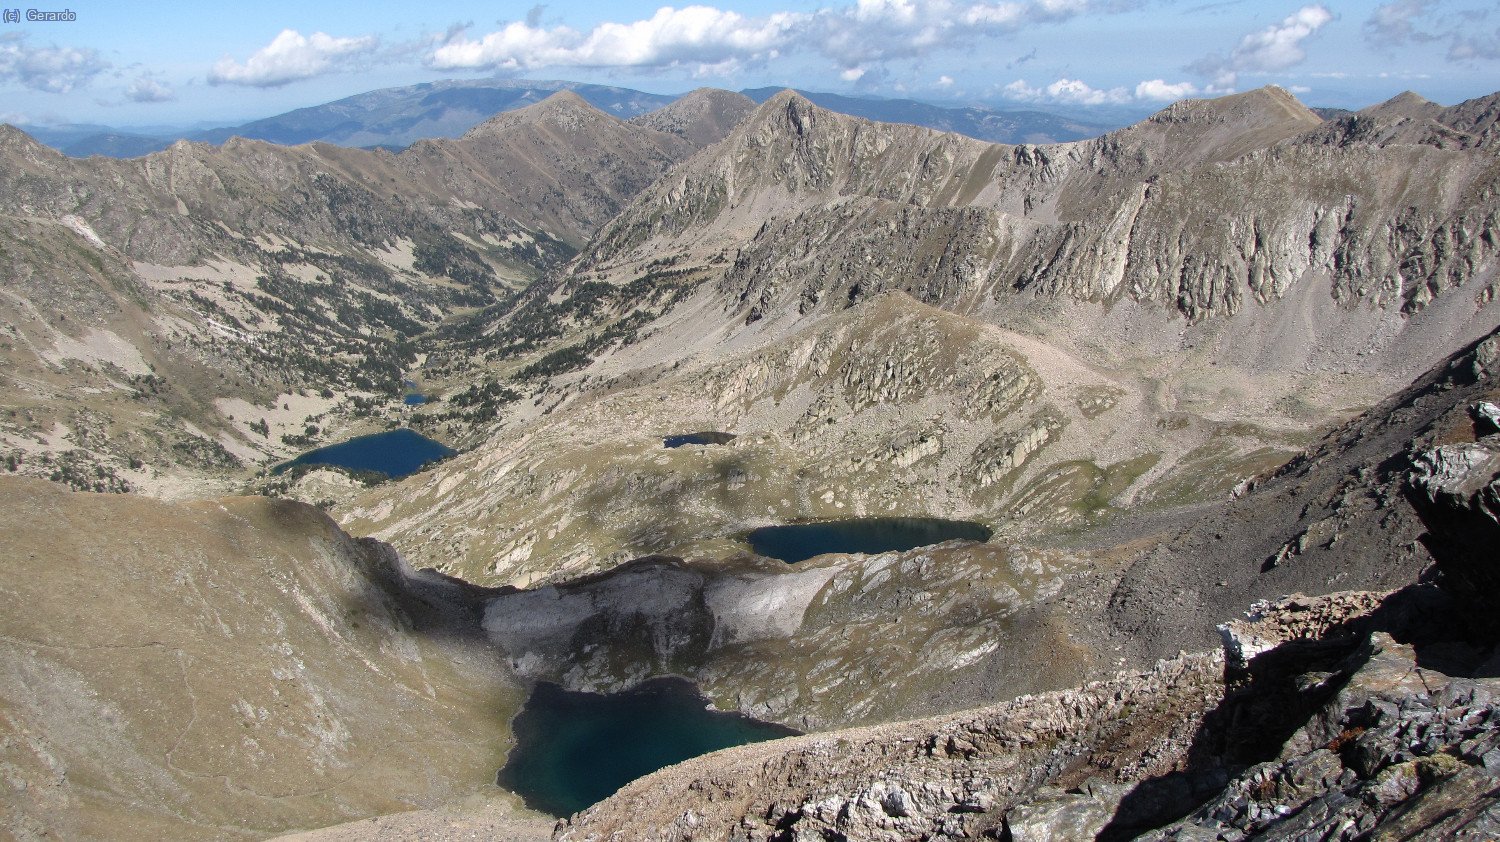 Des del superior, vista a nord, a la part alta de la Vall de Carançà i els seus llacs.